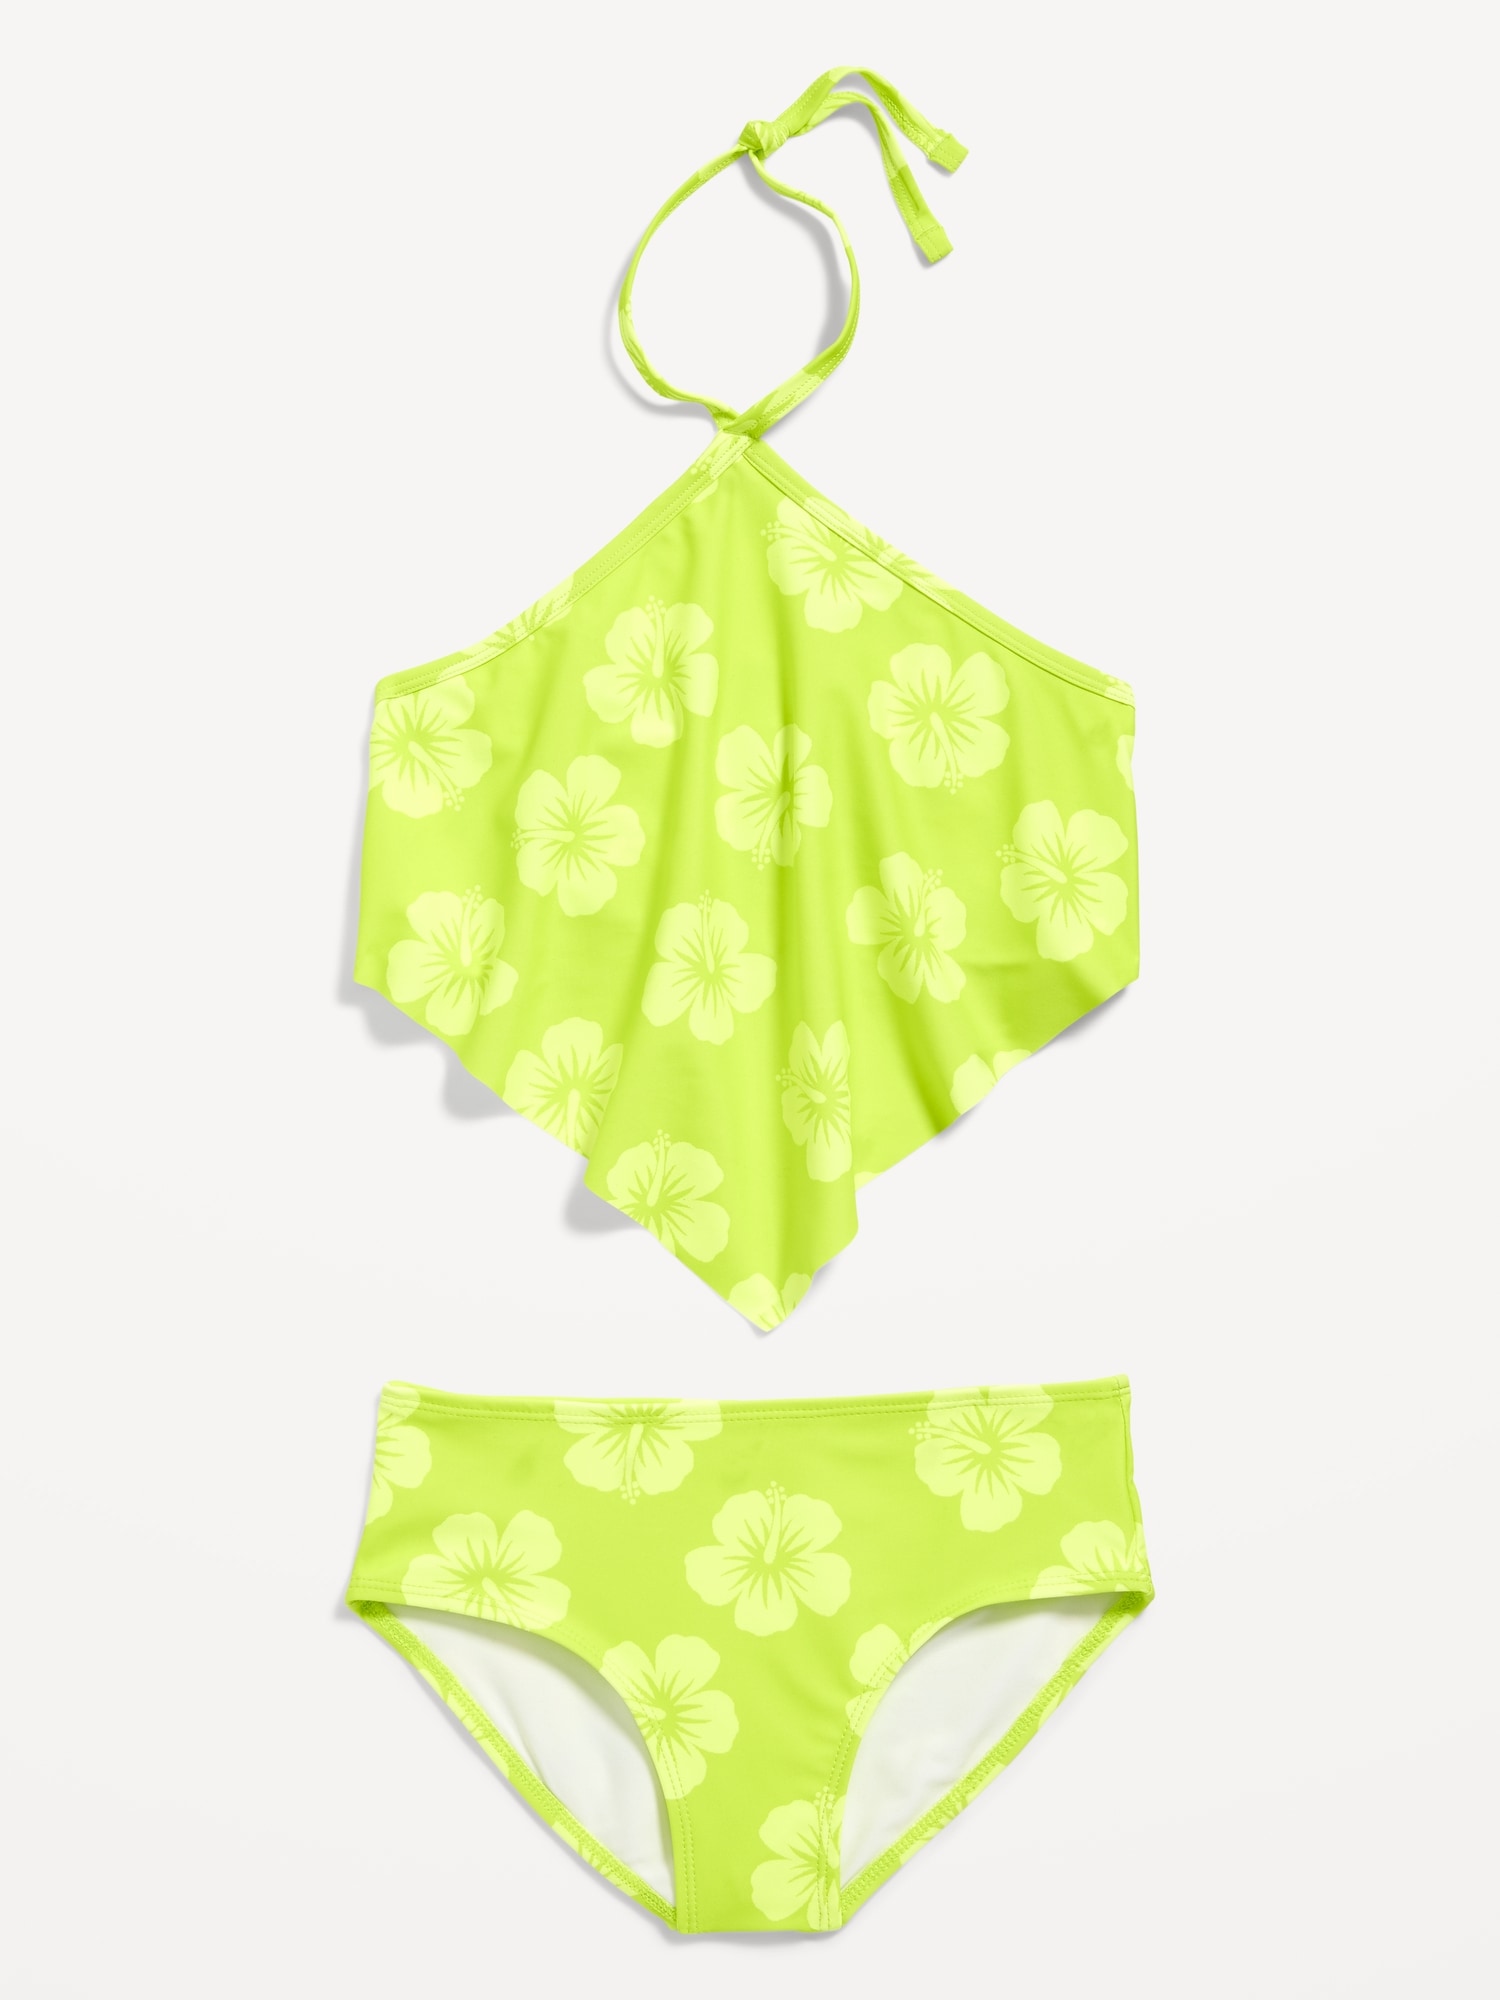 Old Navy Patterned Bandana Halter Bikini Swim Set for Girls green. 1